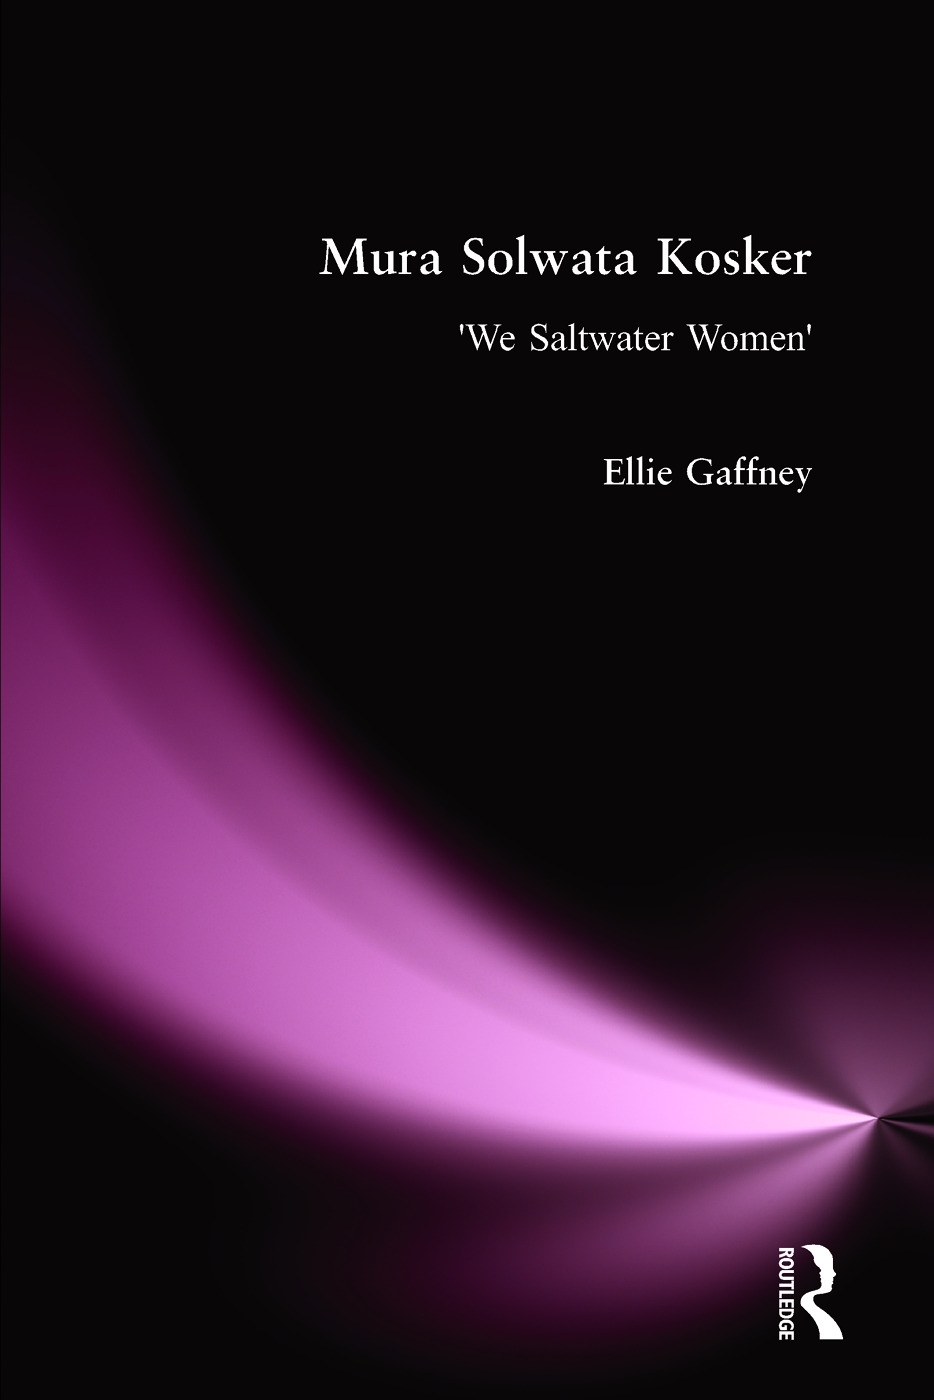 Mura Solwata Kosker: We Saltwater Women